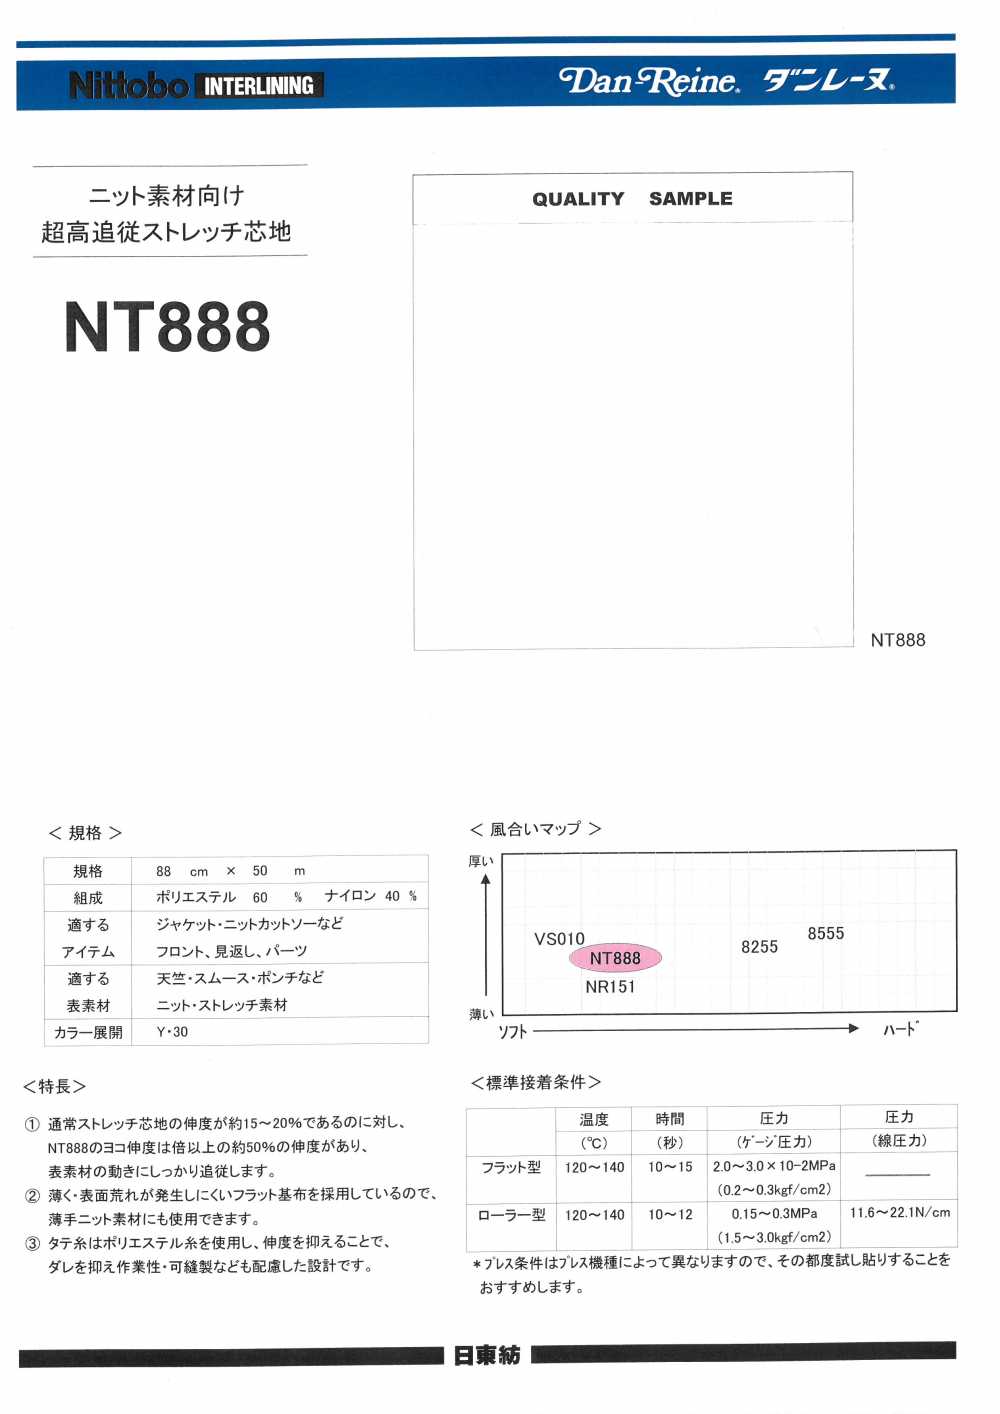 NT888 Danlaine Ultra-high Compliance Stretch Interlining 15D Für Gestrickte Materialien[Einlage] Nittobo